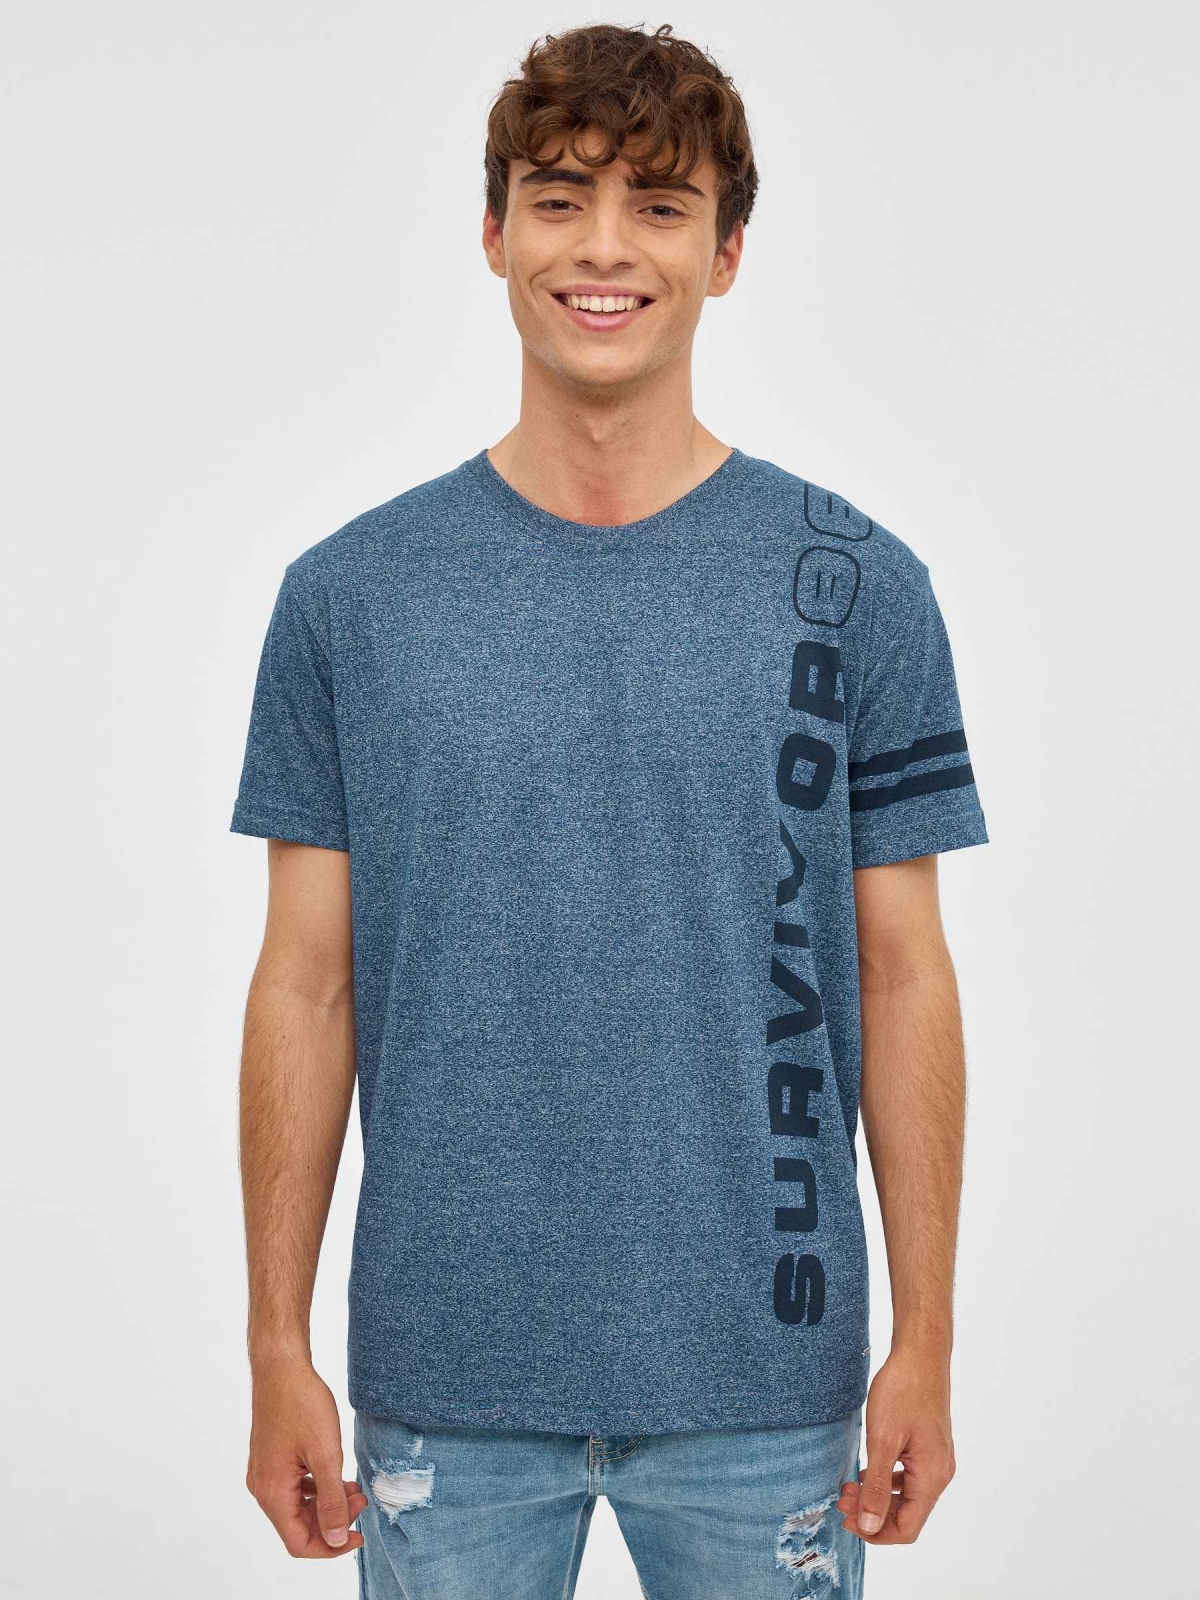 Survivor T-shirt blue middle front view